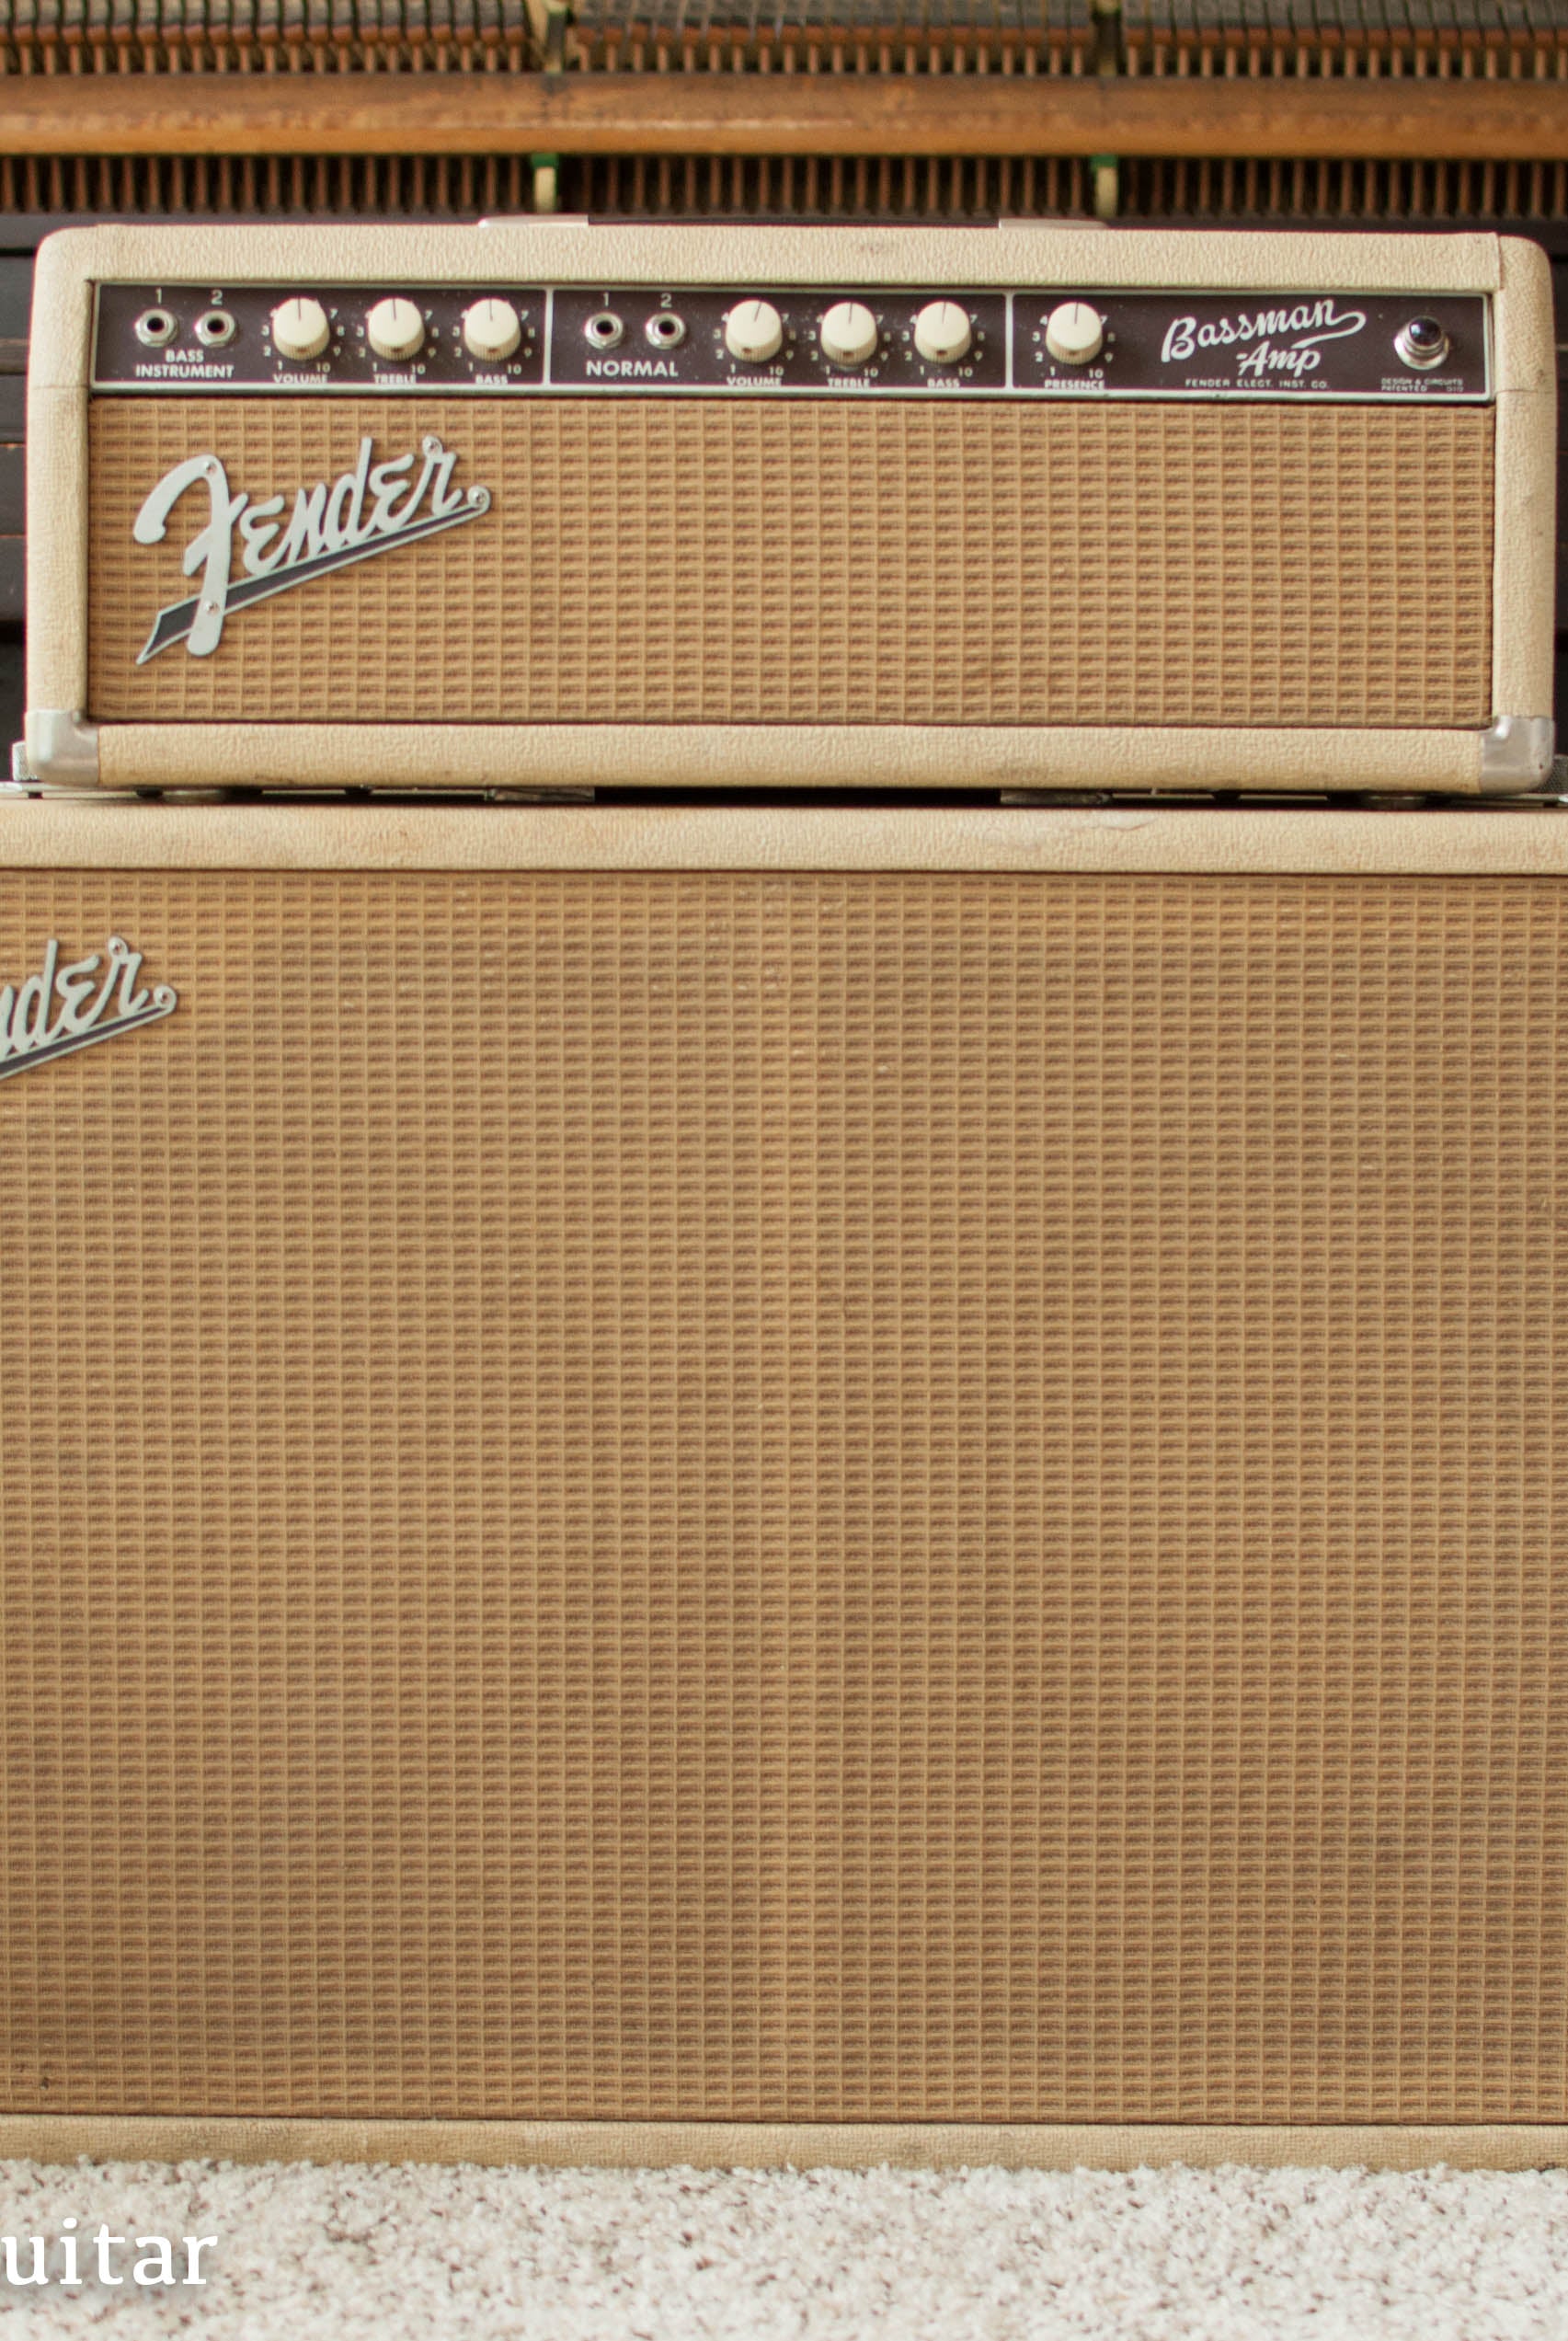 Vintage 1963 Fender Bassman guitar amplifier